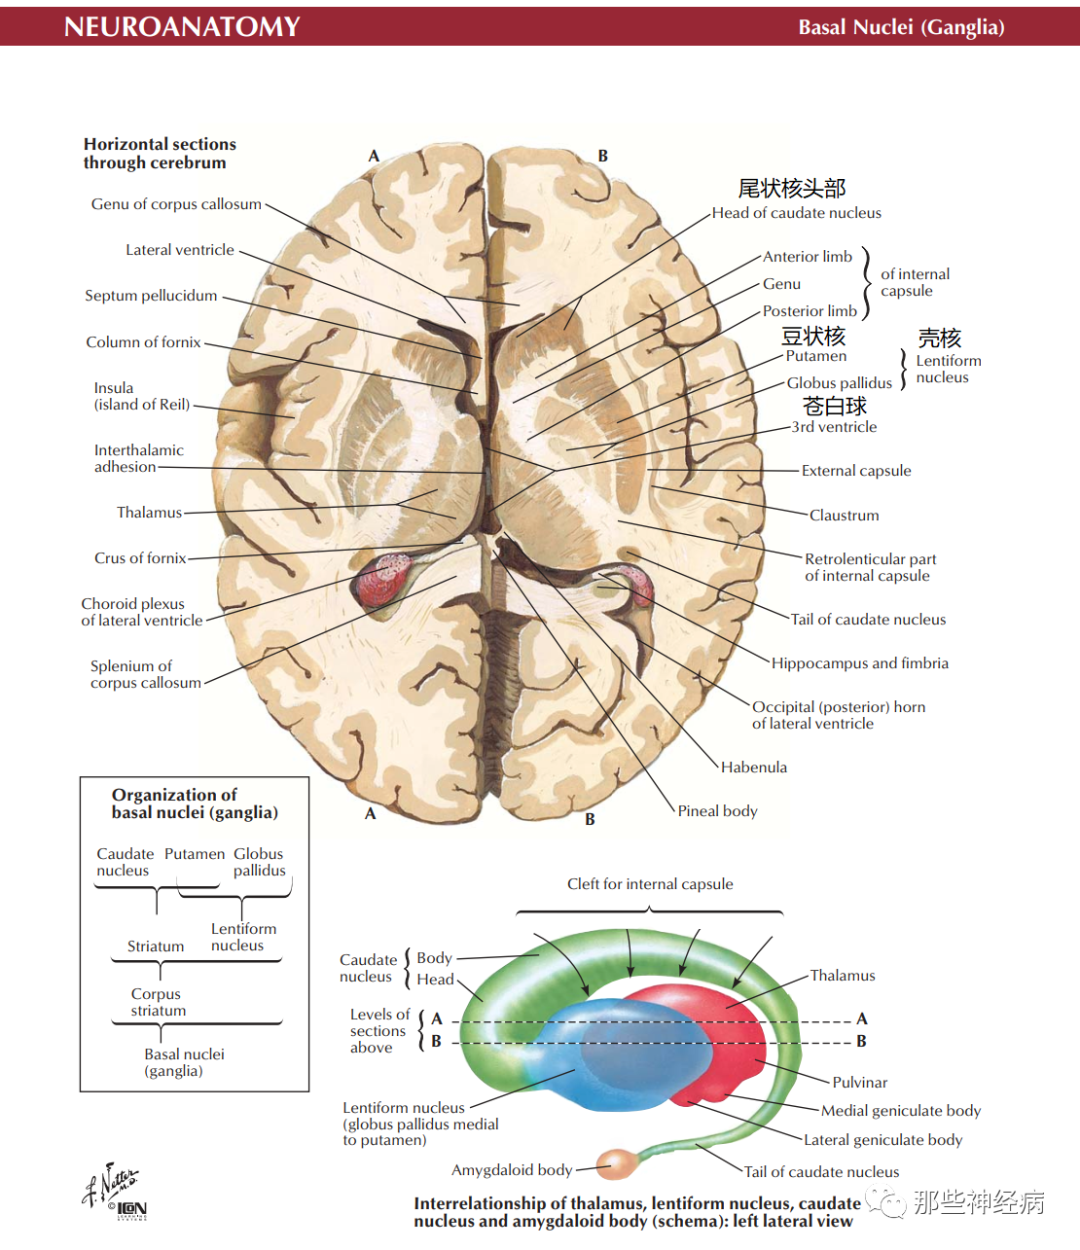 nucleus), 位于大脑白质深部,其主要由尾状核,豆状核,屏状核,杏仁核